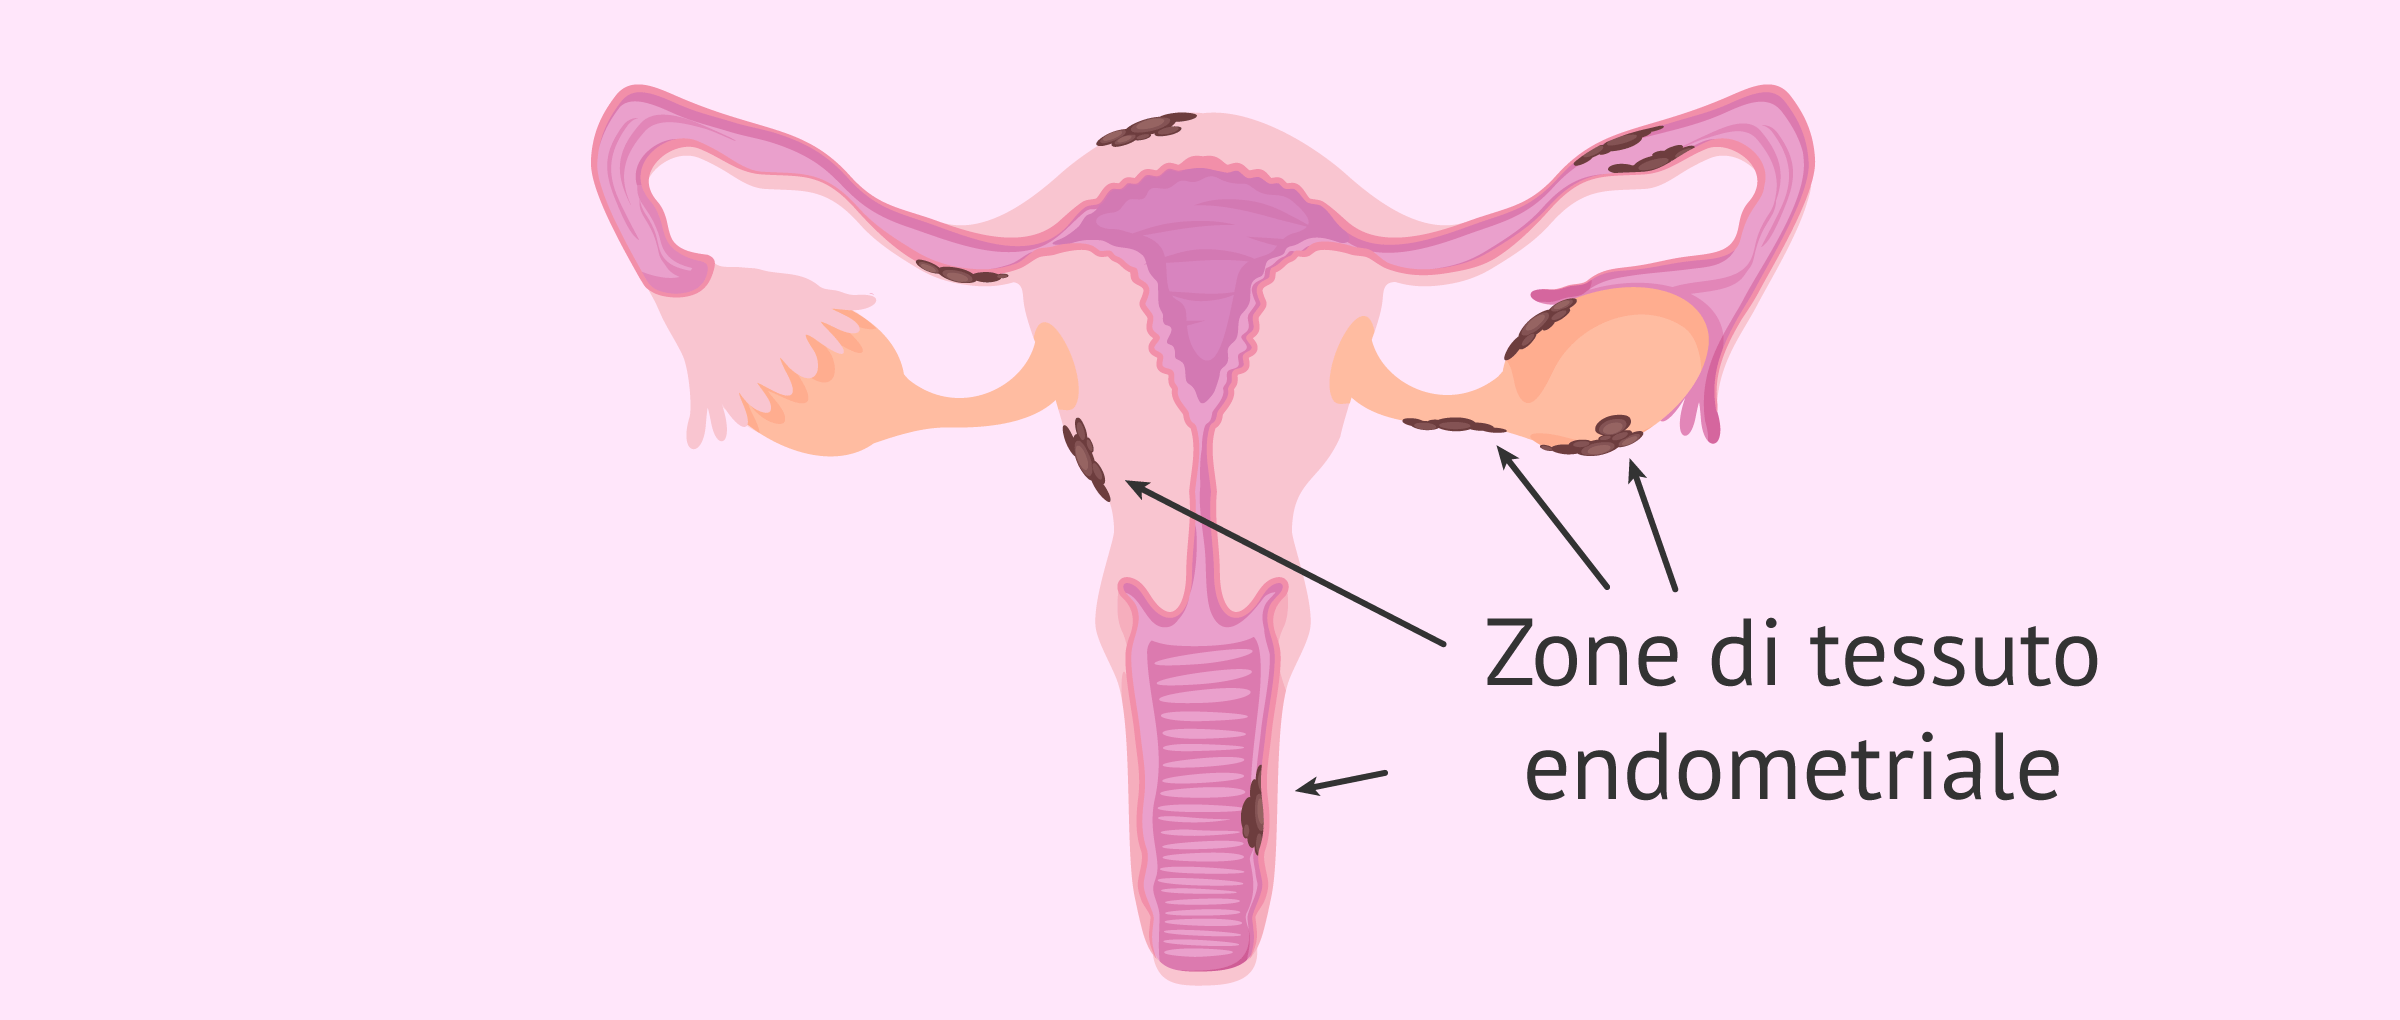 Posizione degli impianti endometriali